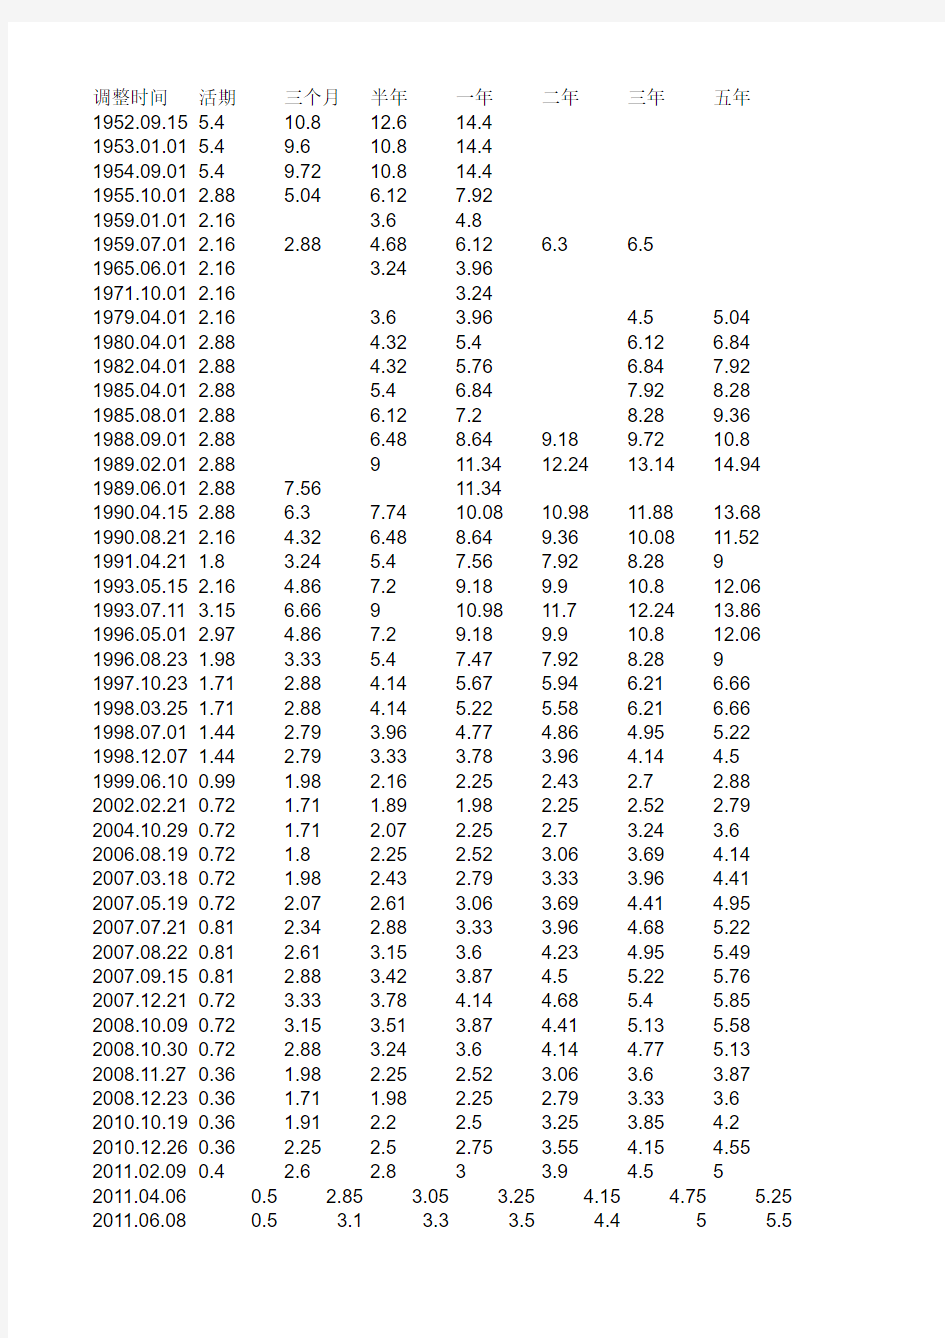 中国历年货币供应量数据M M1M2  物价 GDP 存款利率